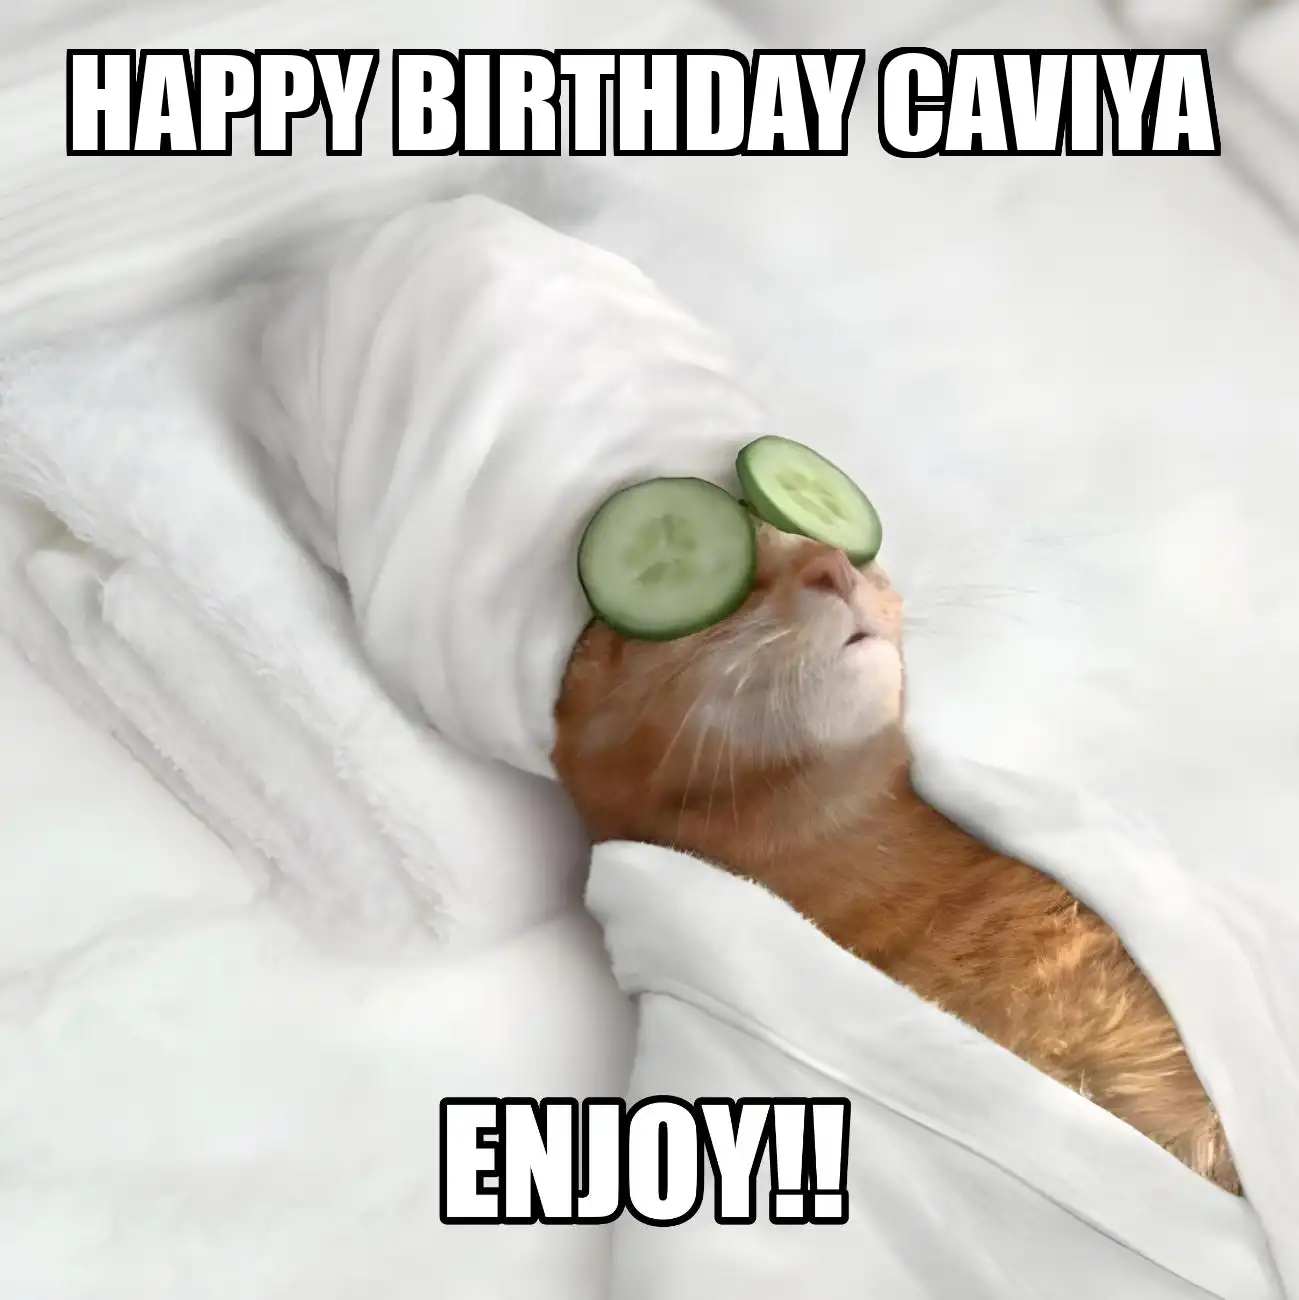 Happy Birthday Caviya Enjoy Cat Meme